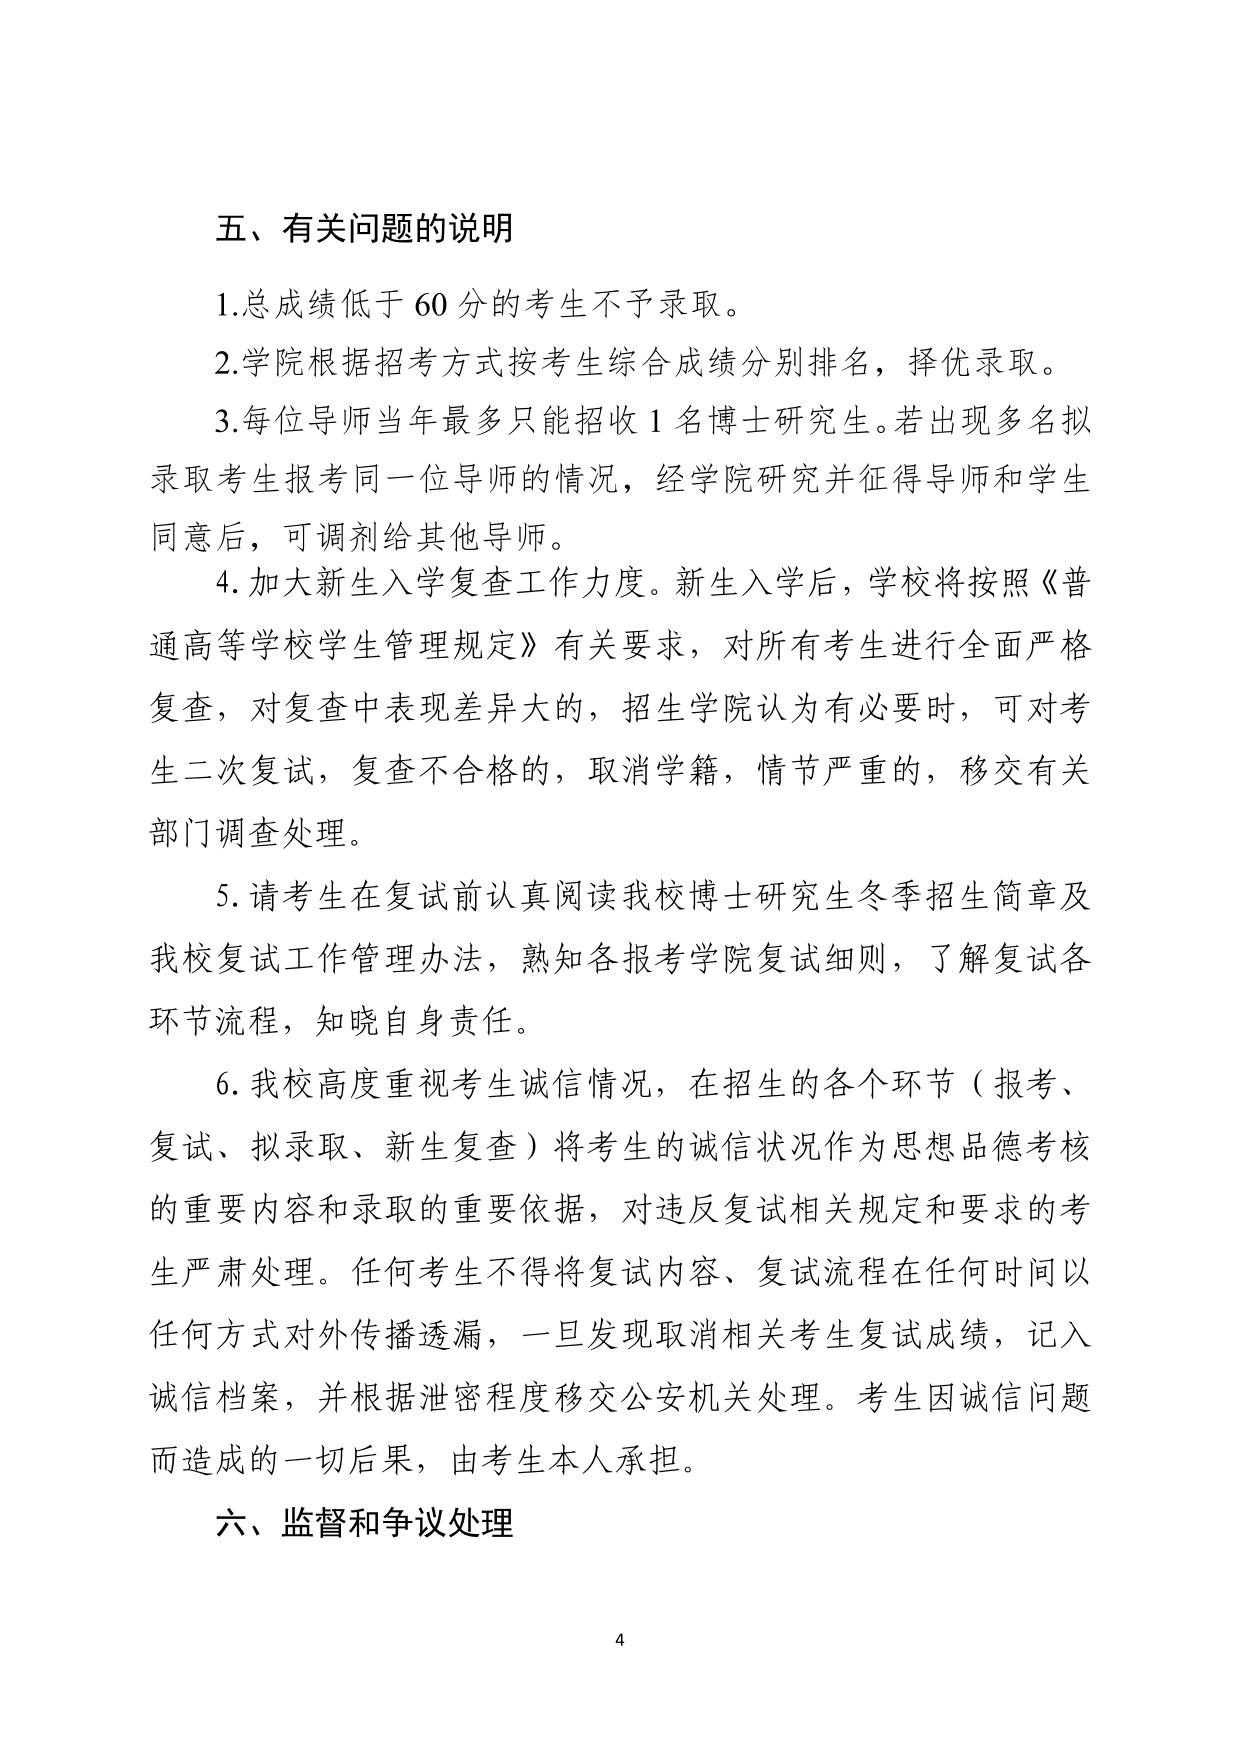 河南理工大学2023年冬季博士研究生复试工作管理办法